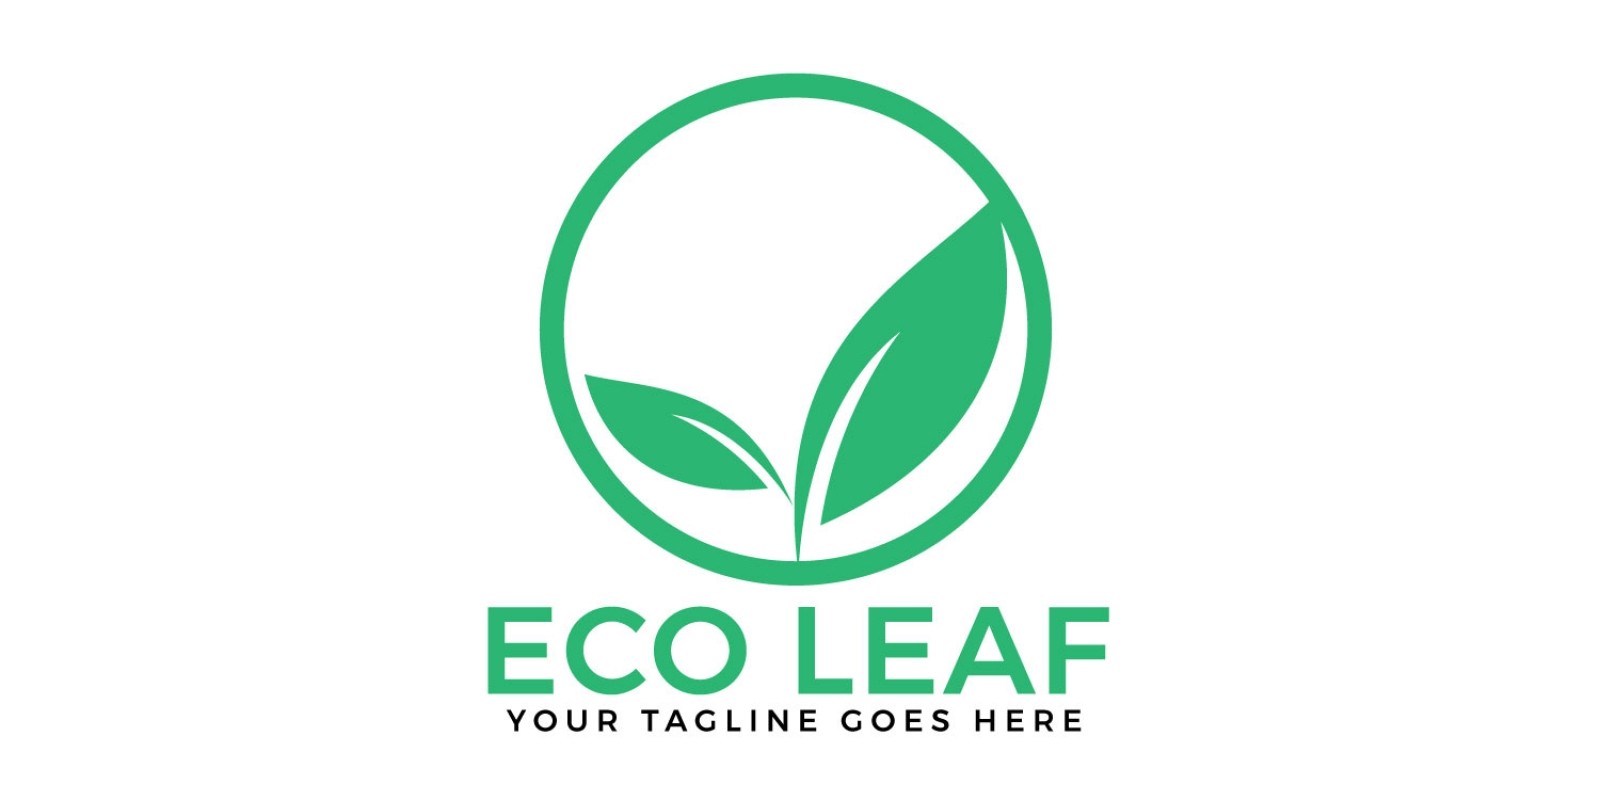 Eco Leaf Vector Logo Design.